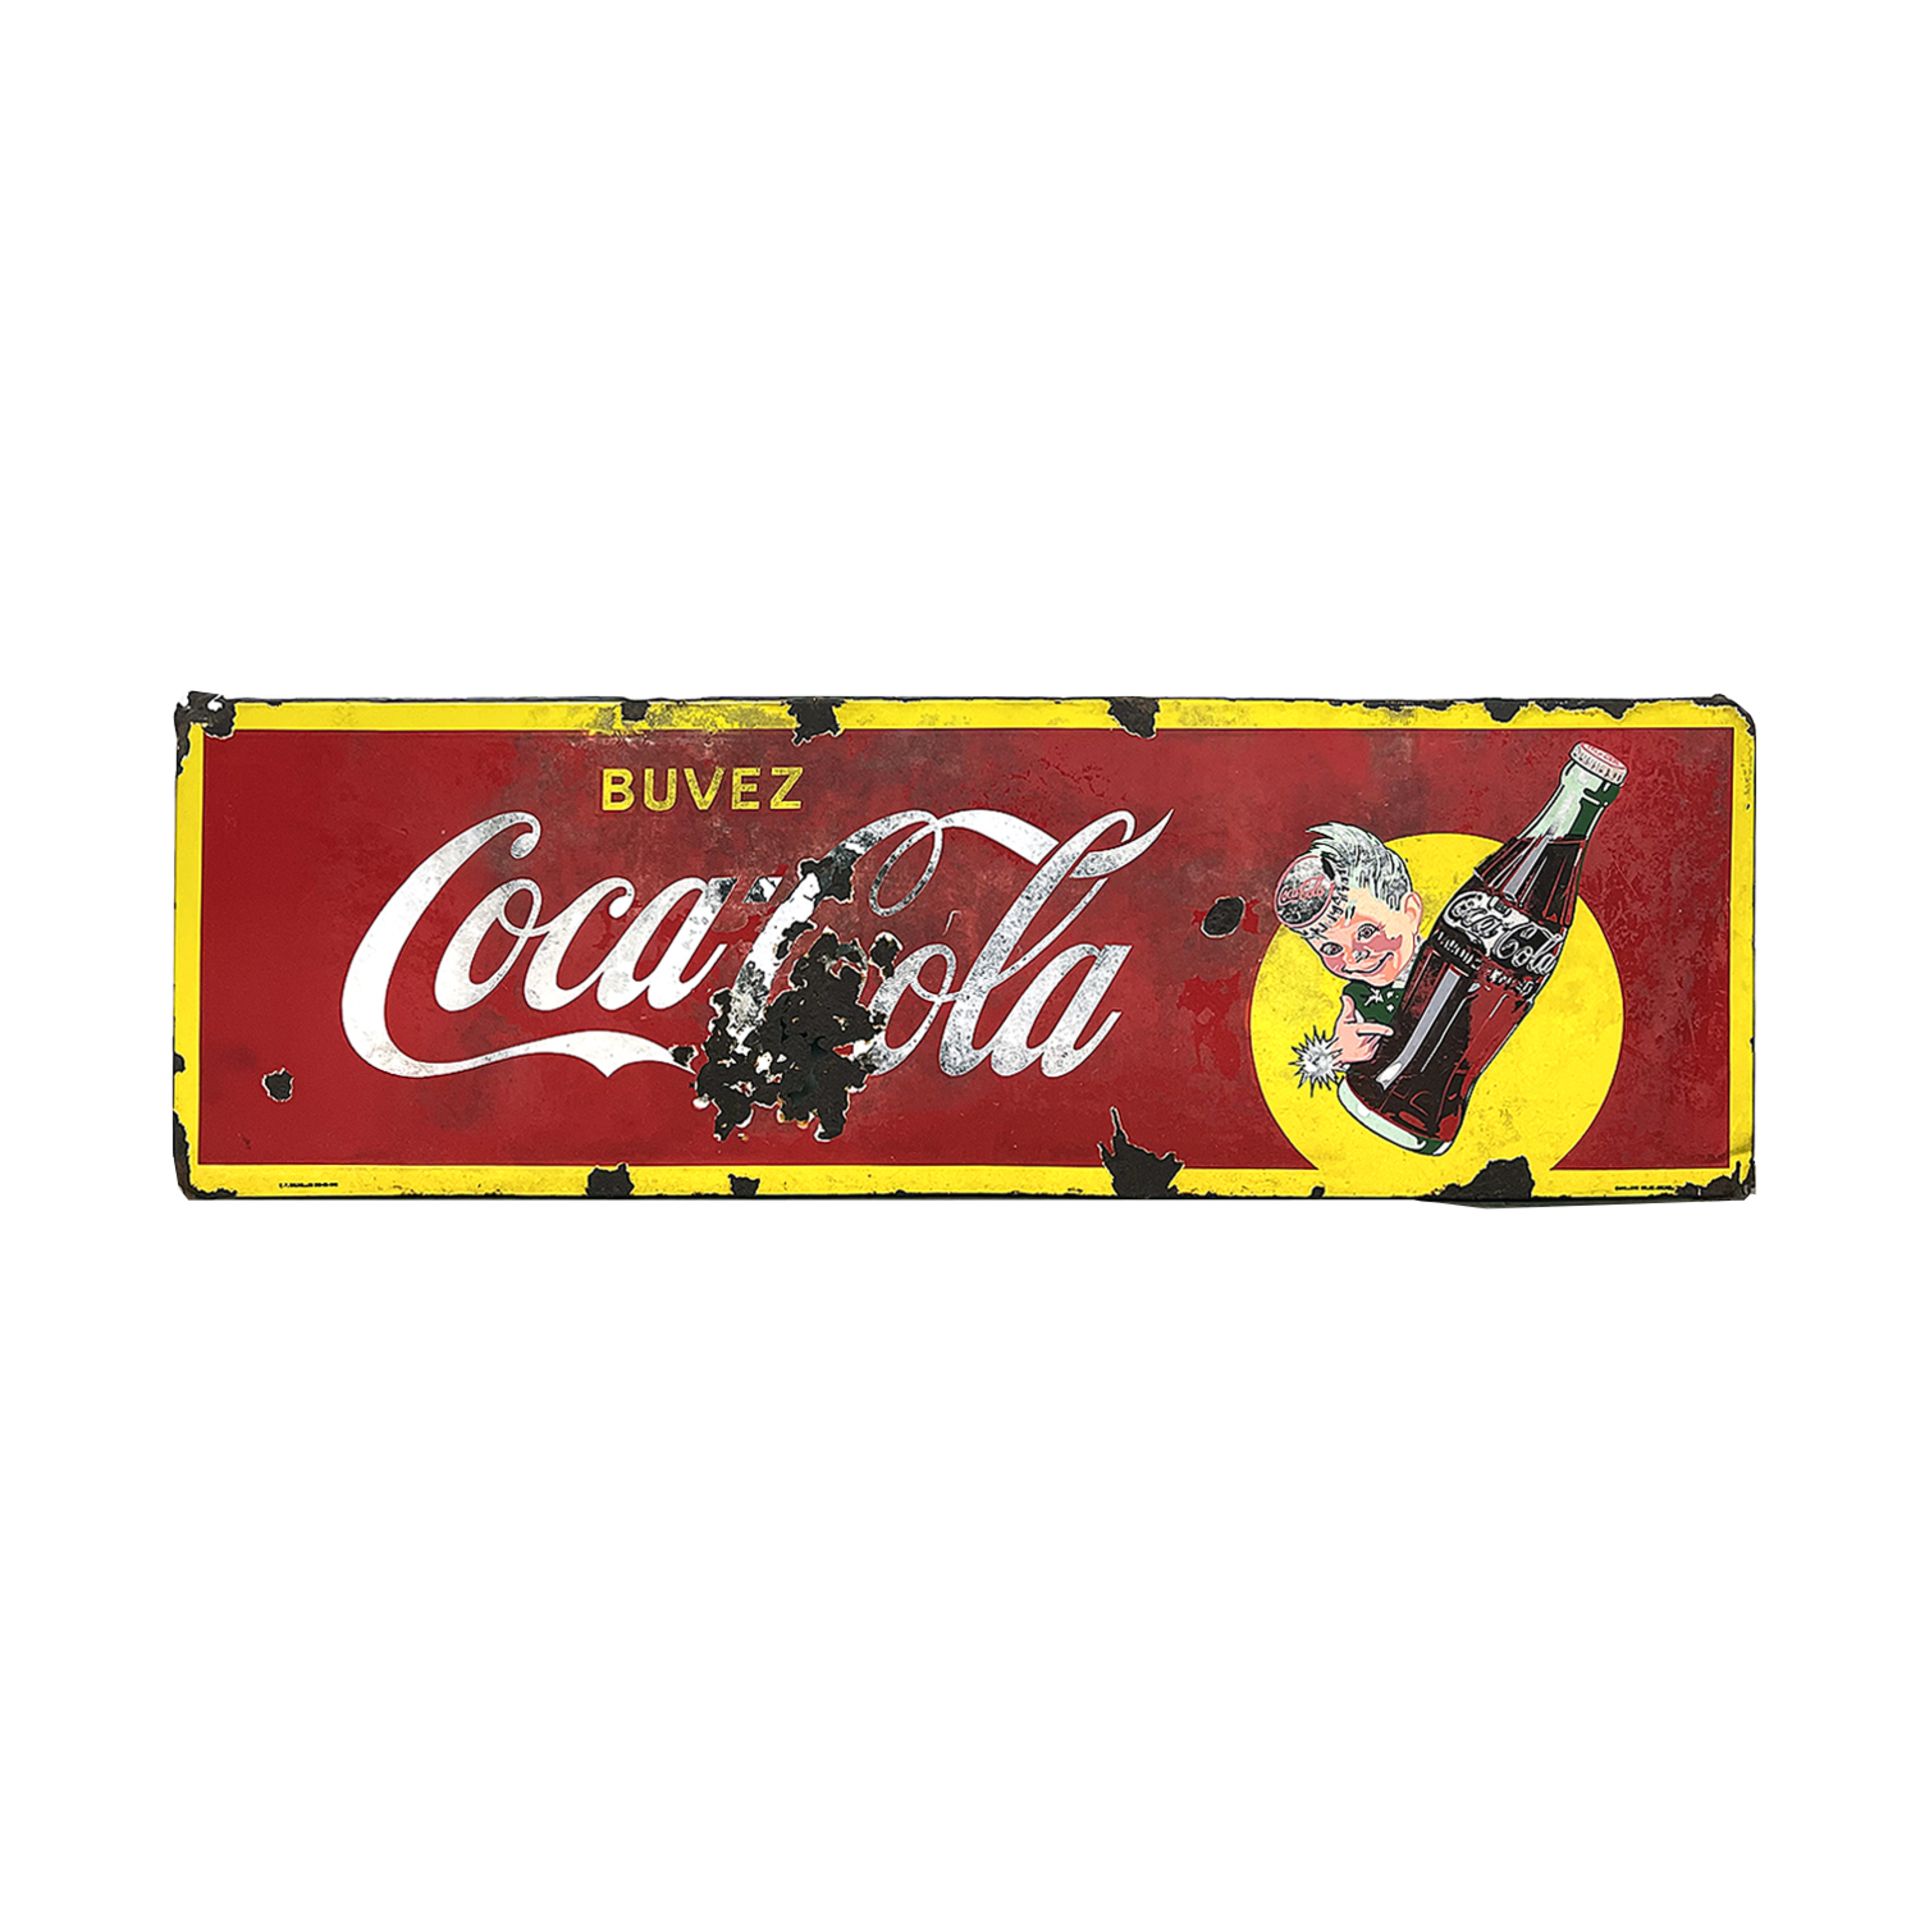 Vintage Belgian Coca-Cola Enamel Sign Featuring Coca-Cola Sprite Boy